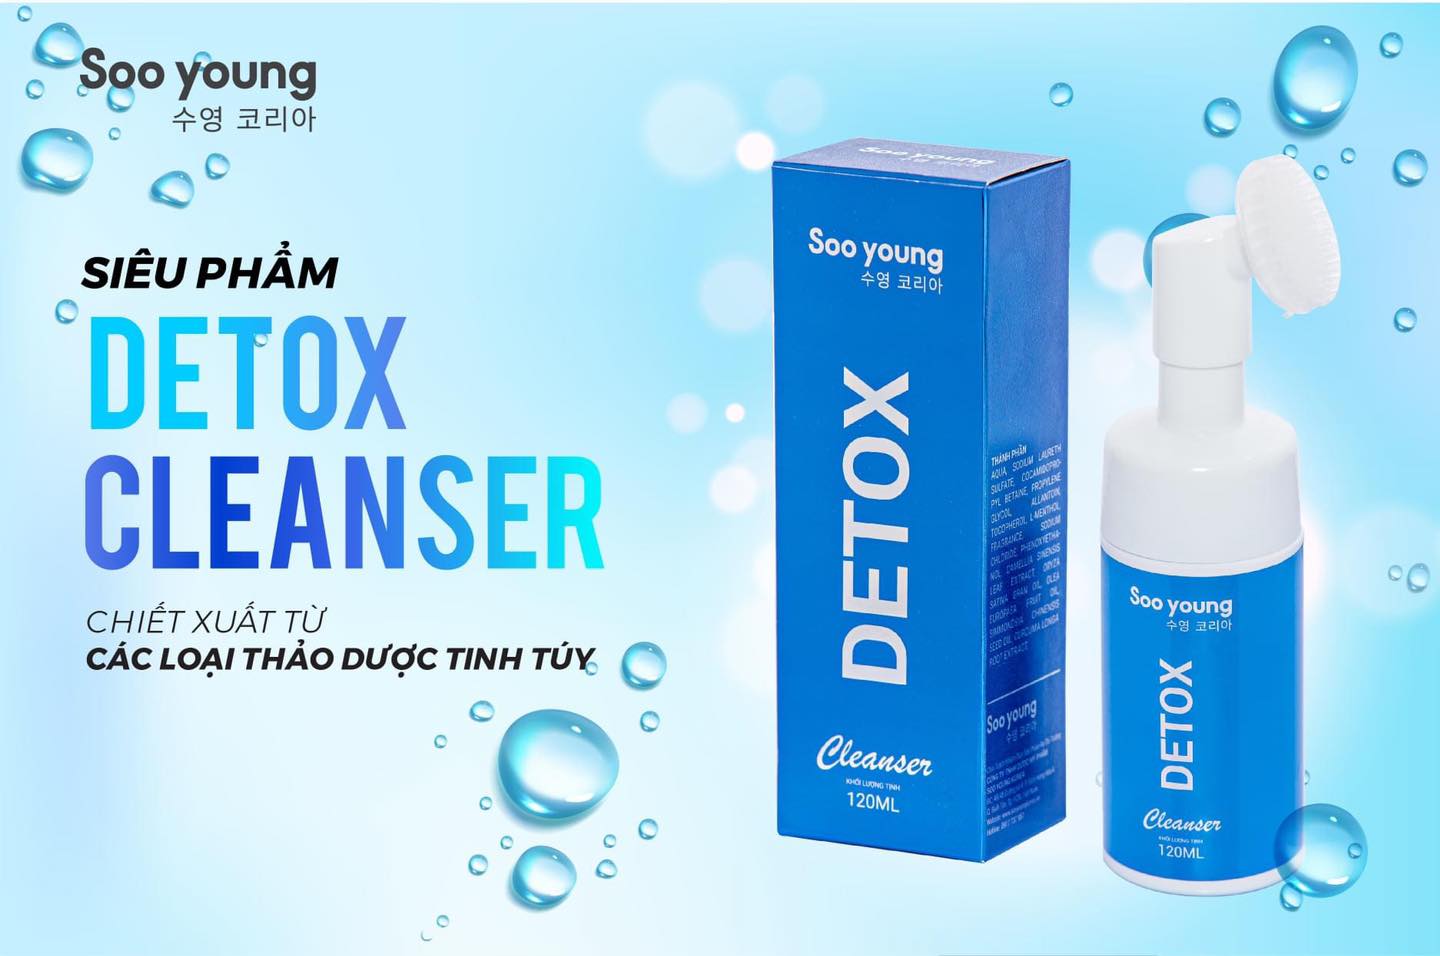 Sữa rửa mặt Detox Cleanser Soo Young - chiết xuất từ các loại thảo dược tinh túy